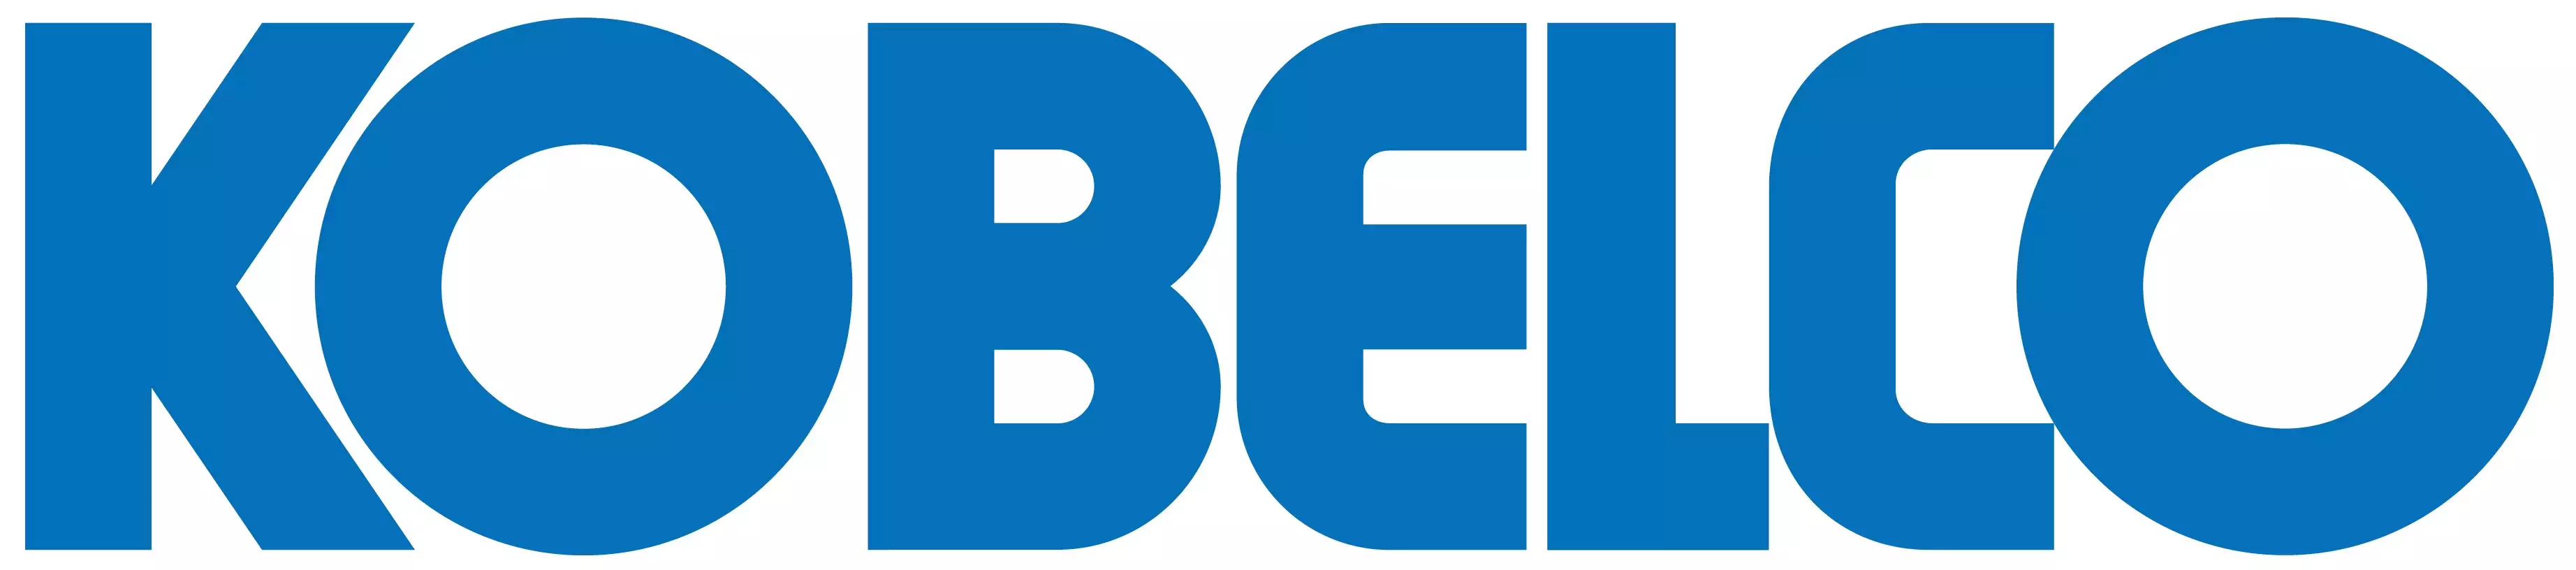 Logo de la marque Kobelco